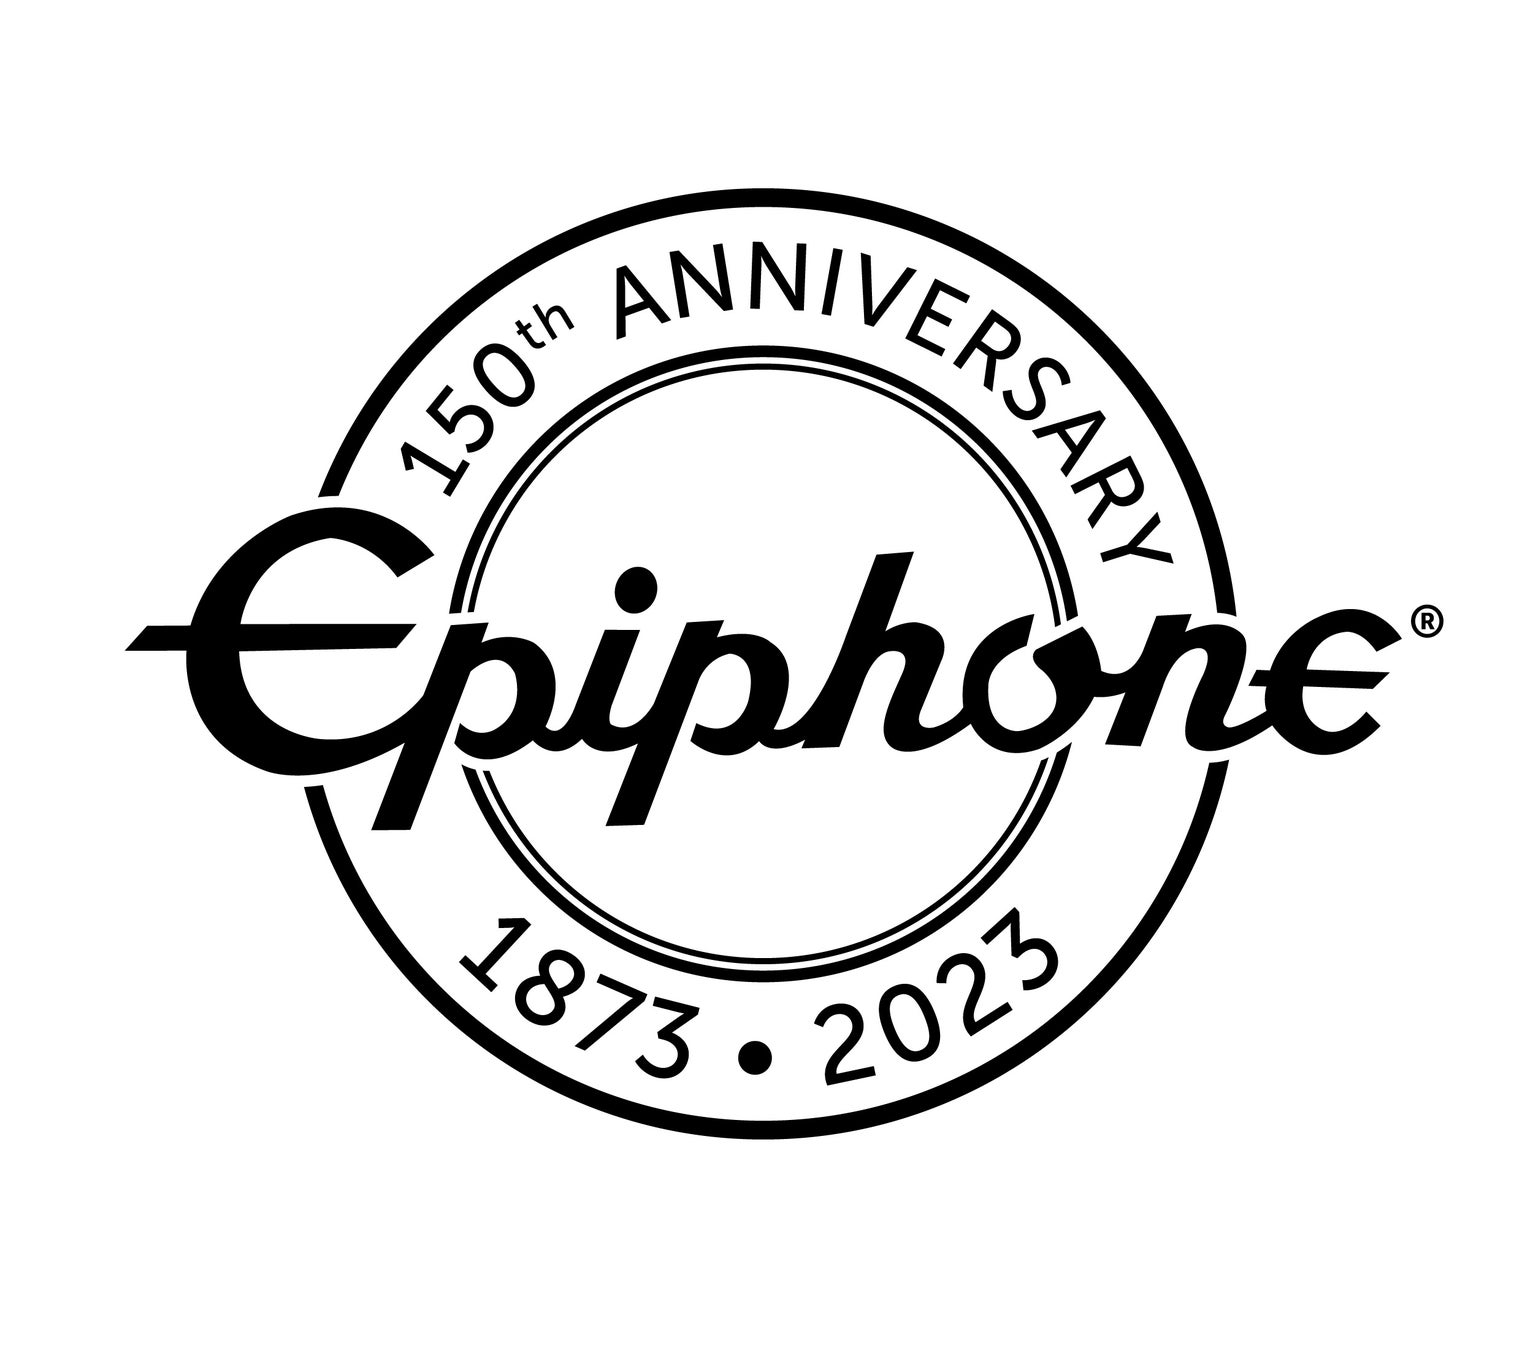 チャリティー・イベントとして開催されたエピフォン150周年ライブ売上収益を被災地支援義援金として納付完了。